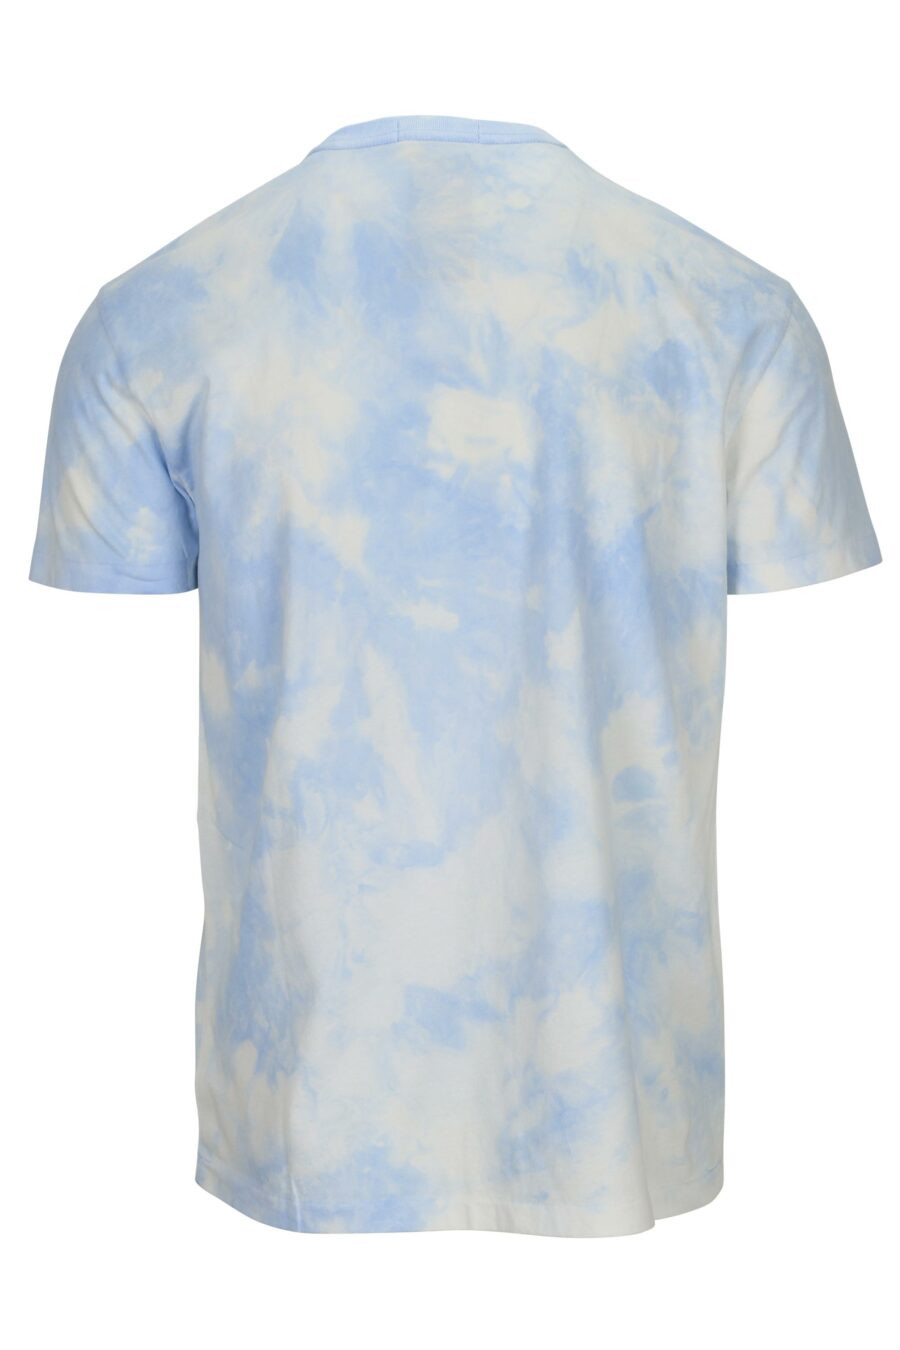 Blue T-shirt with beach polo bear logo - 3616536307666 1